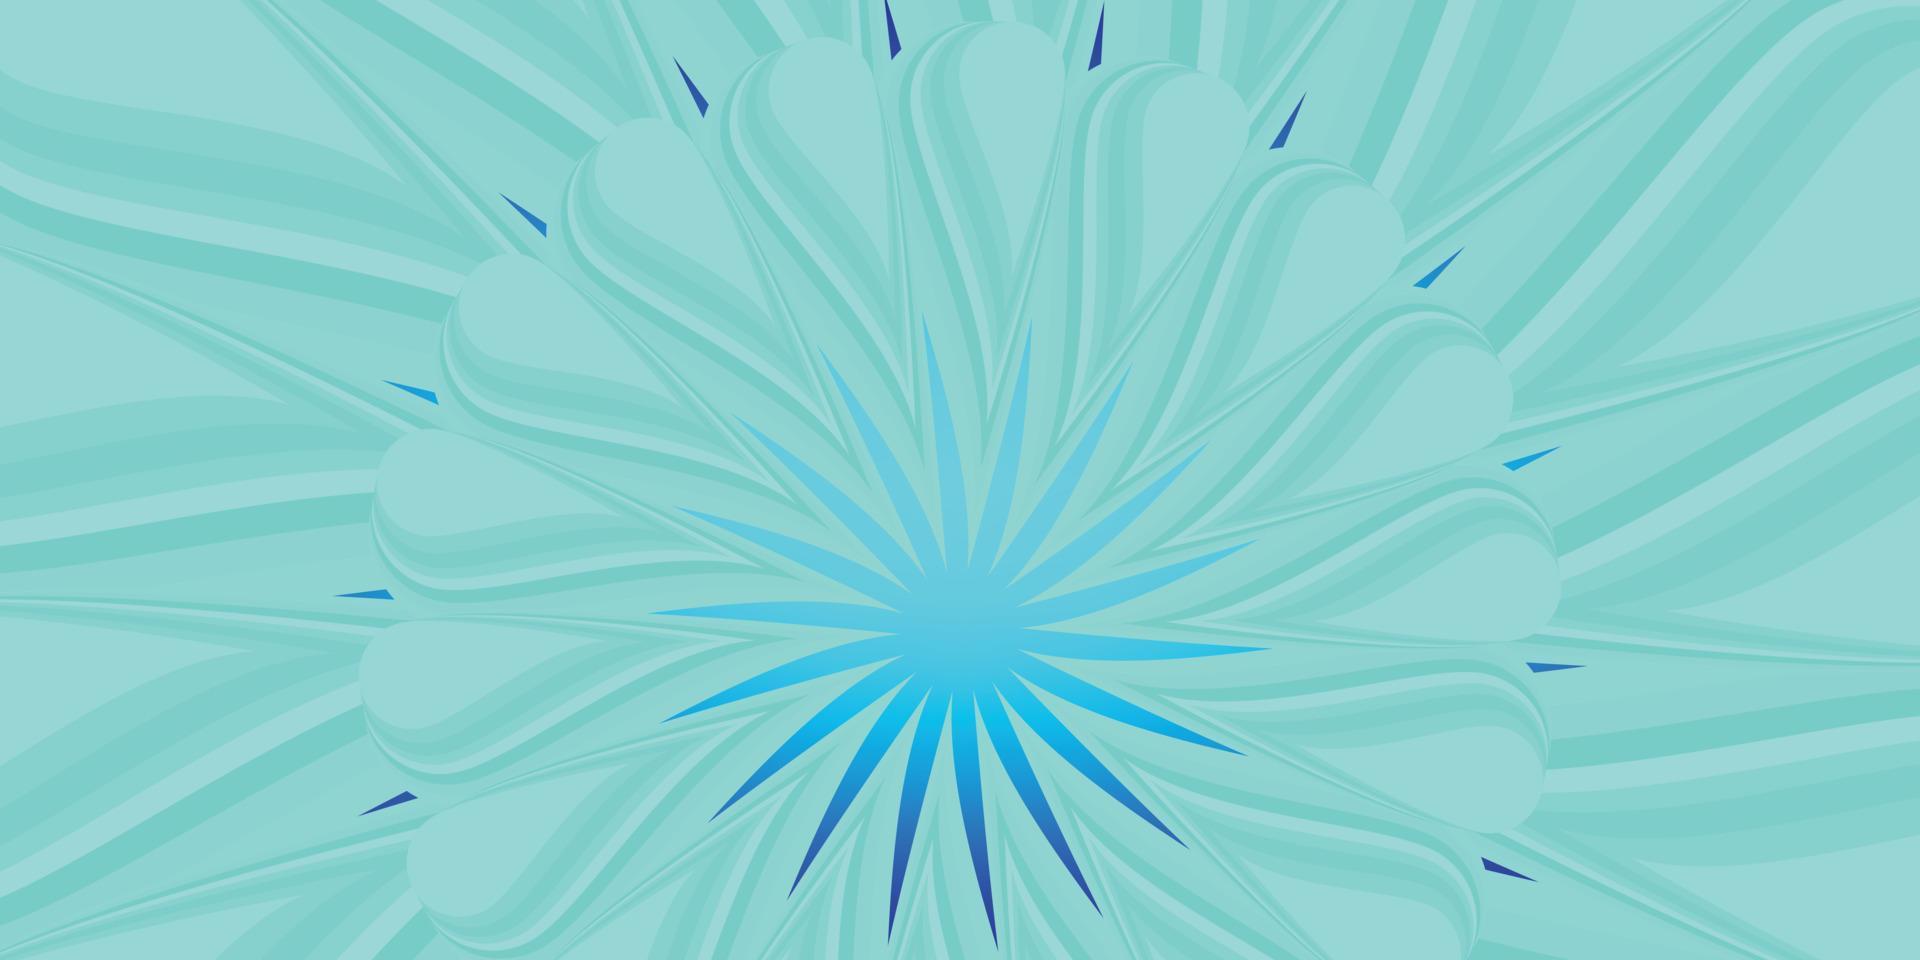 astratto sfondo trama carta da parati fondale stella fiore raggi starburst primo piano raggio di sole arte design illustrazione vettoriale